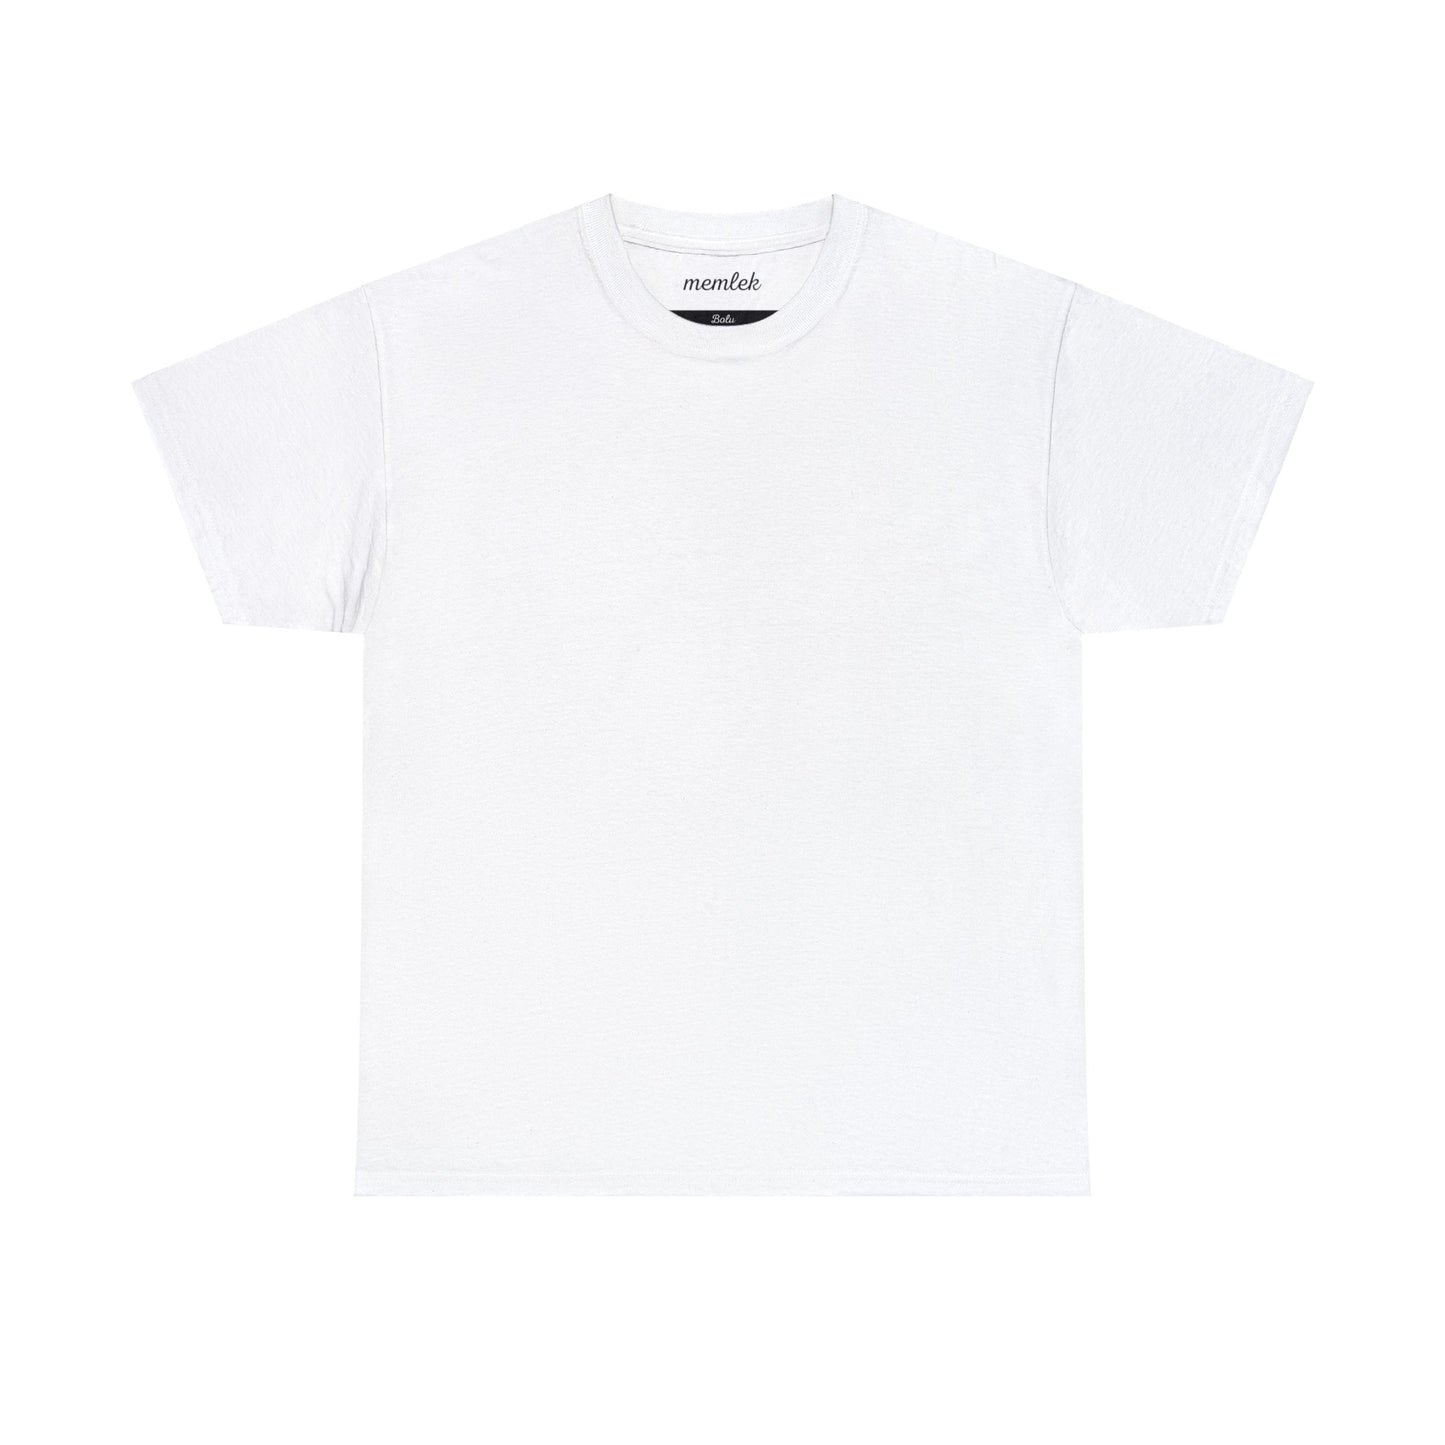 Kurt - 14 Bolu - T-Shirt - Back Print - Black/White